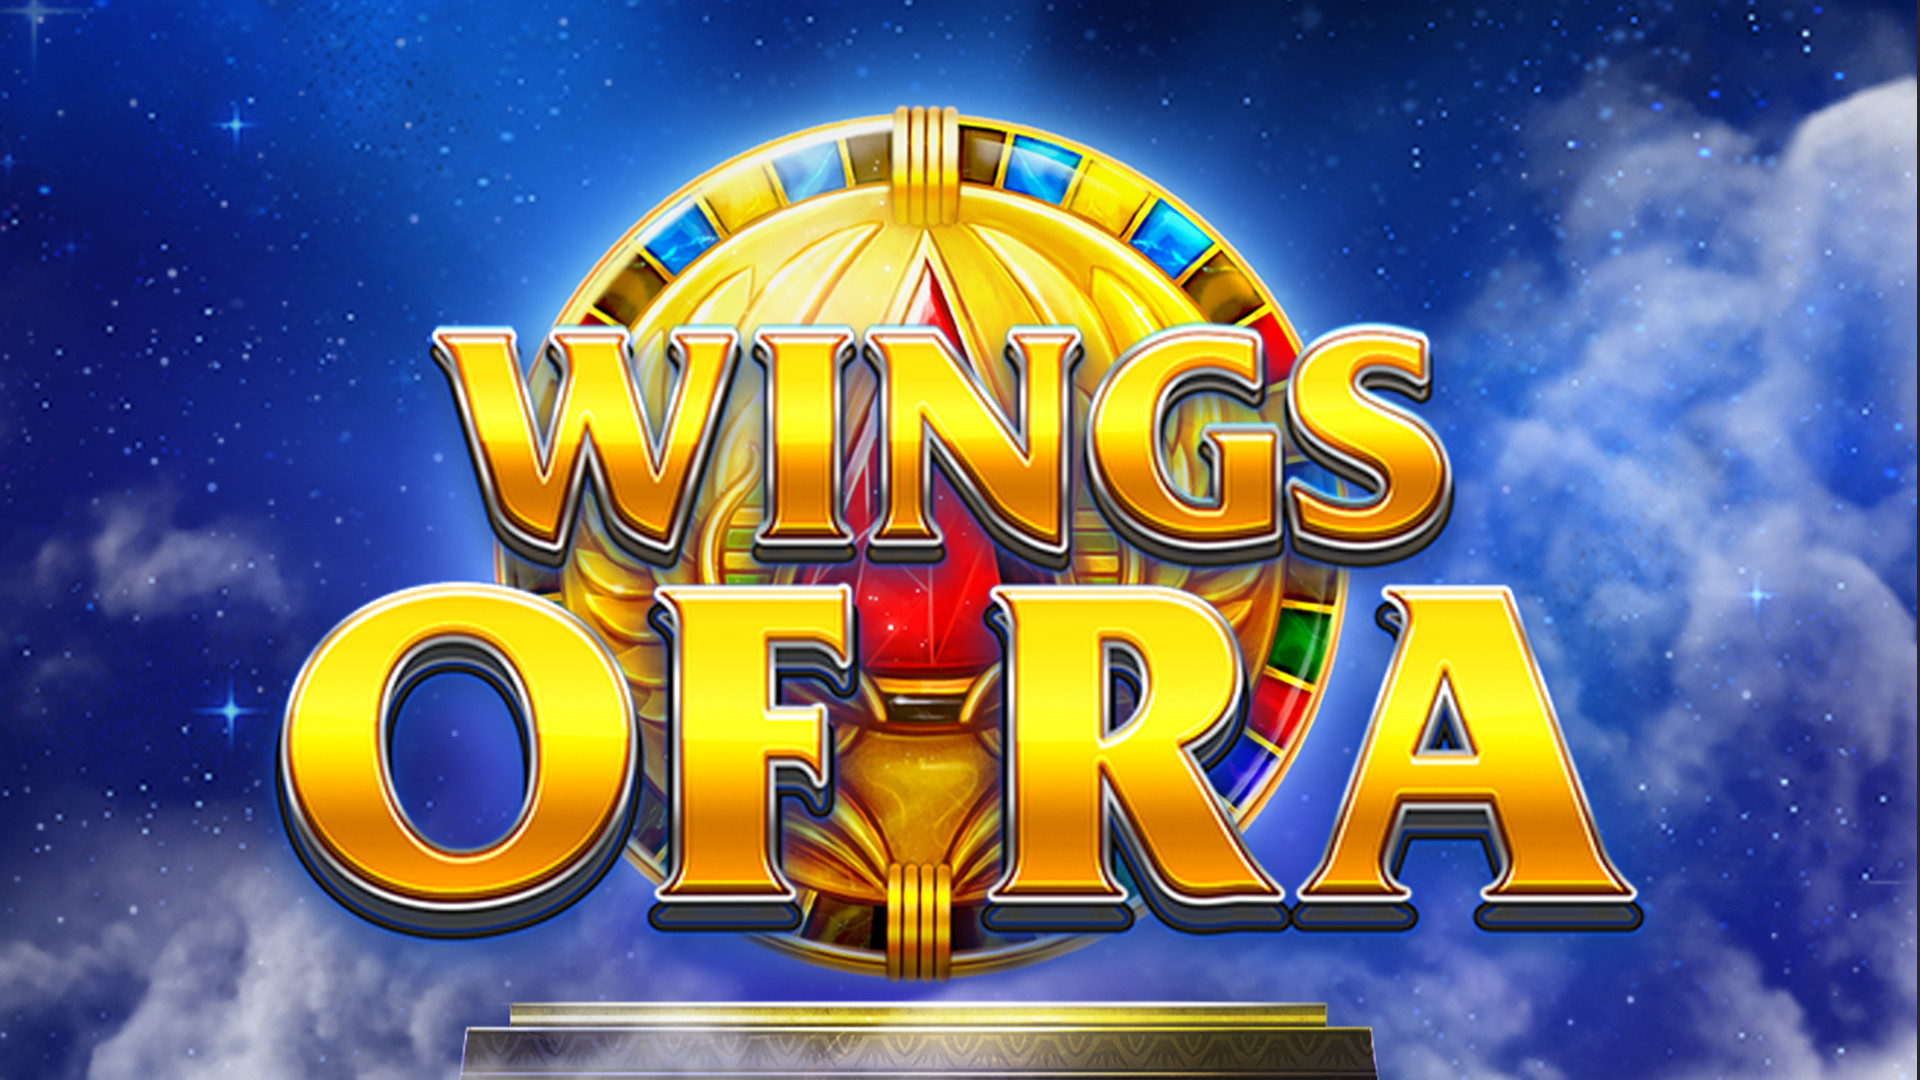 Wings of Ra